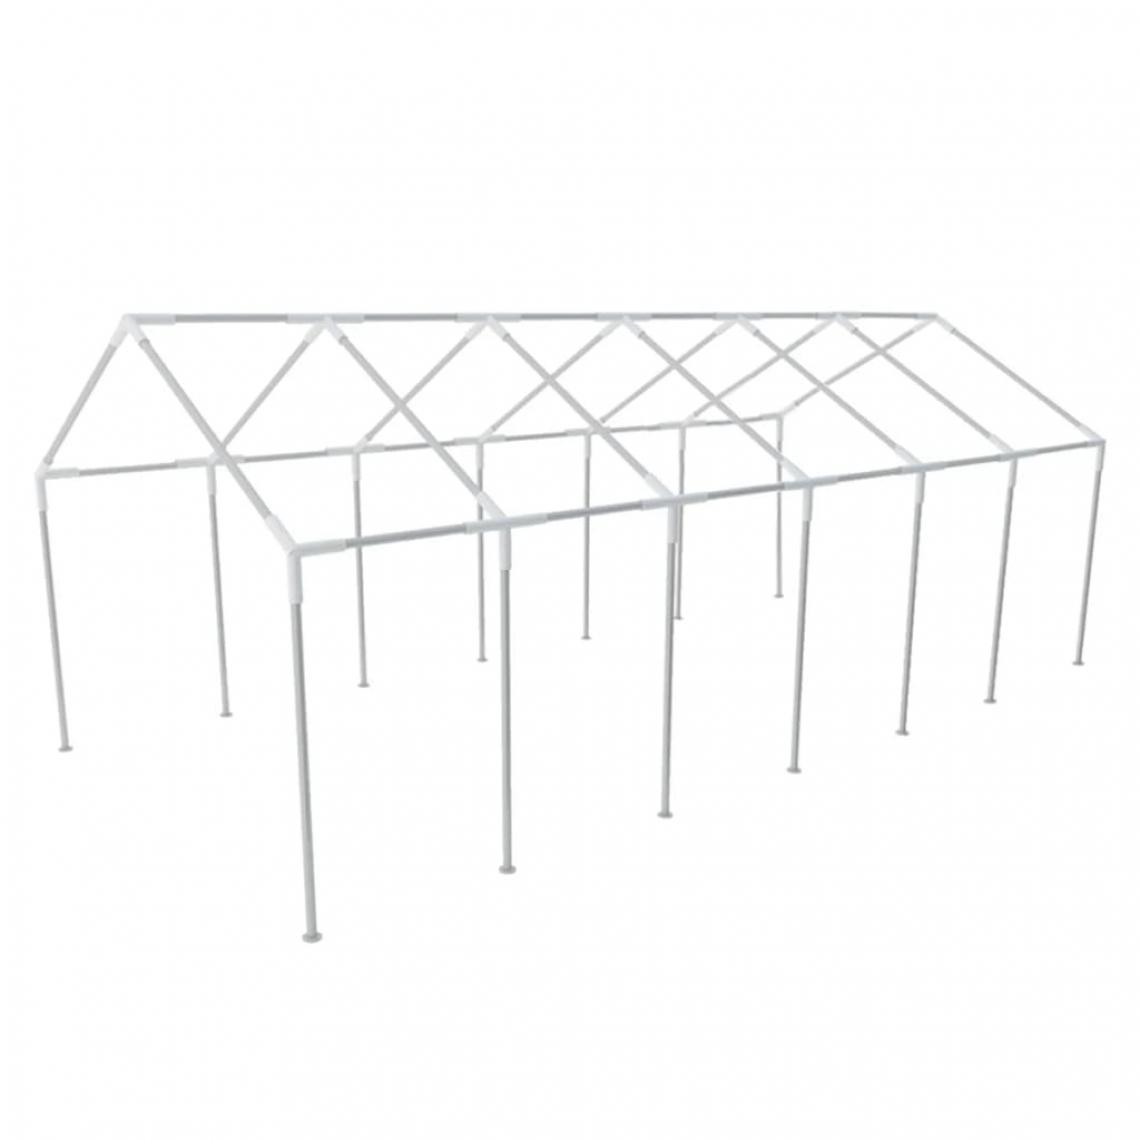 Icaverne - Esthetique Accessoires pour auvents et abris reference Honiara Chassis en acier pour tente de réception 12 x 6 m - Abris de jardin en bois